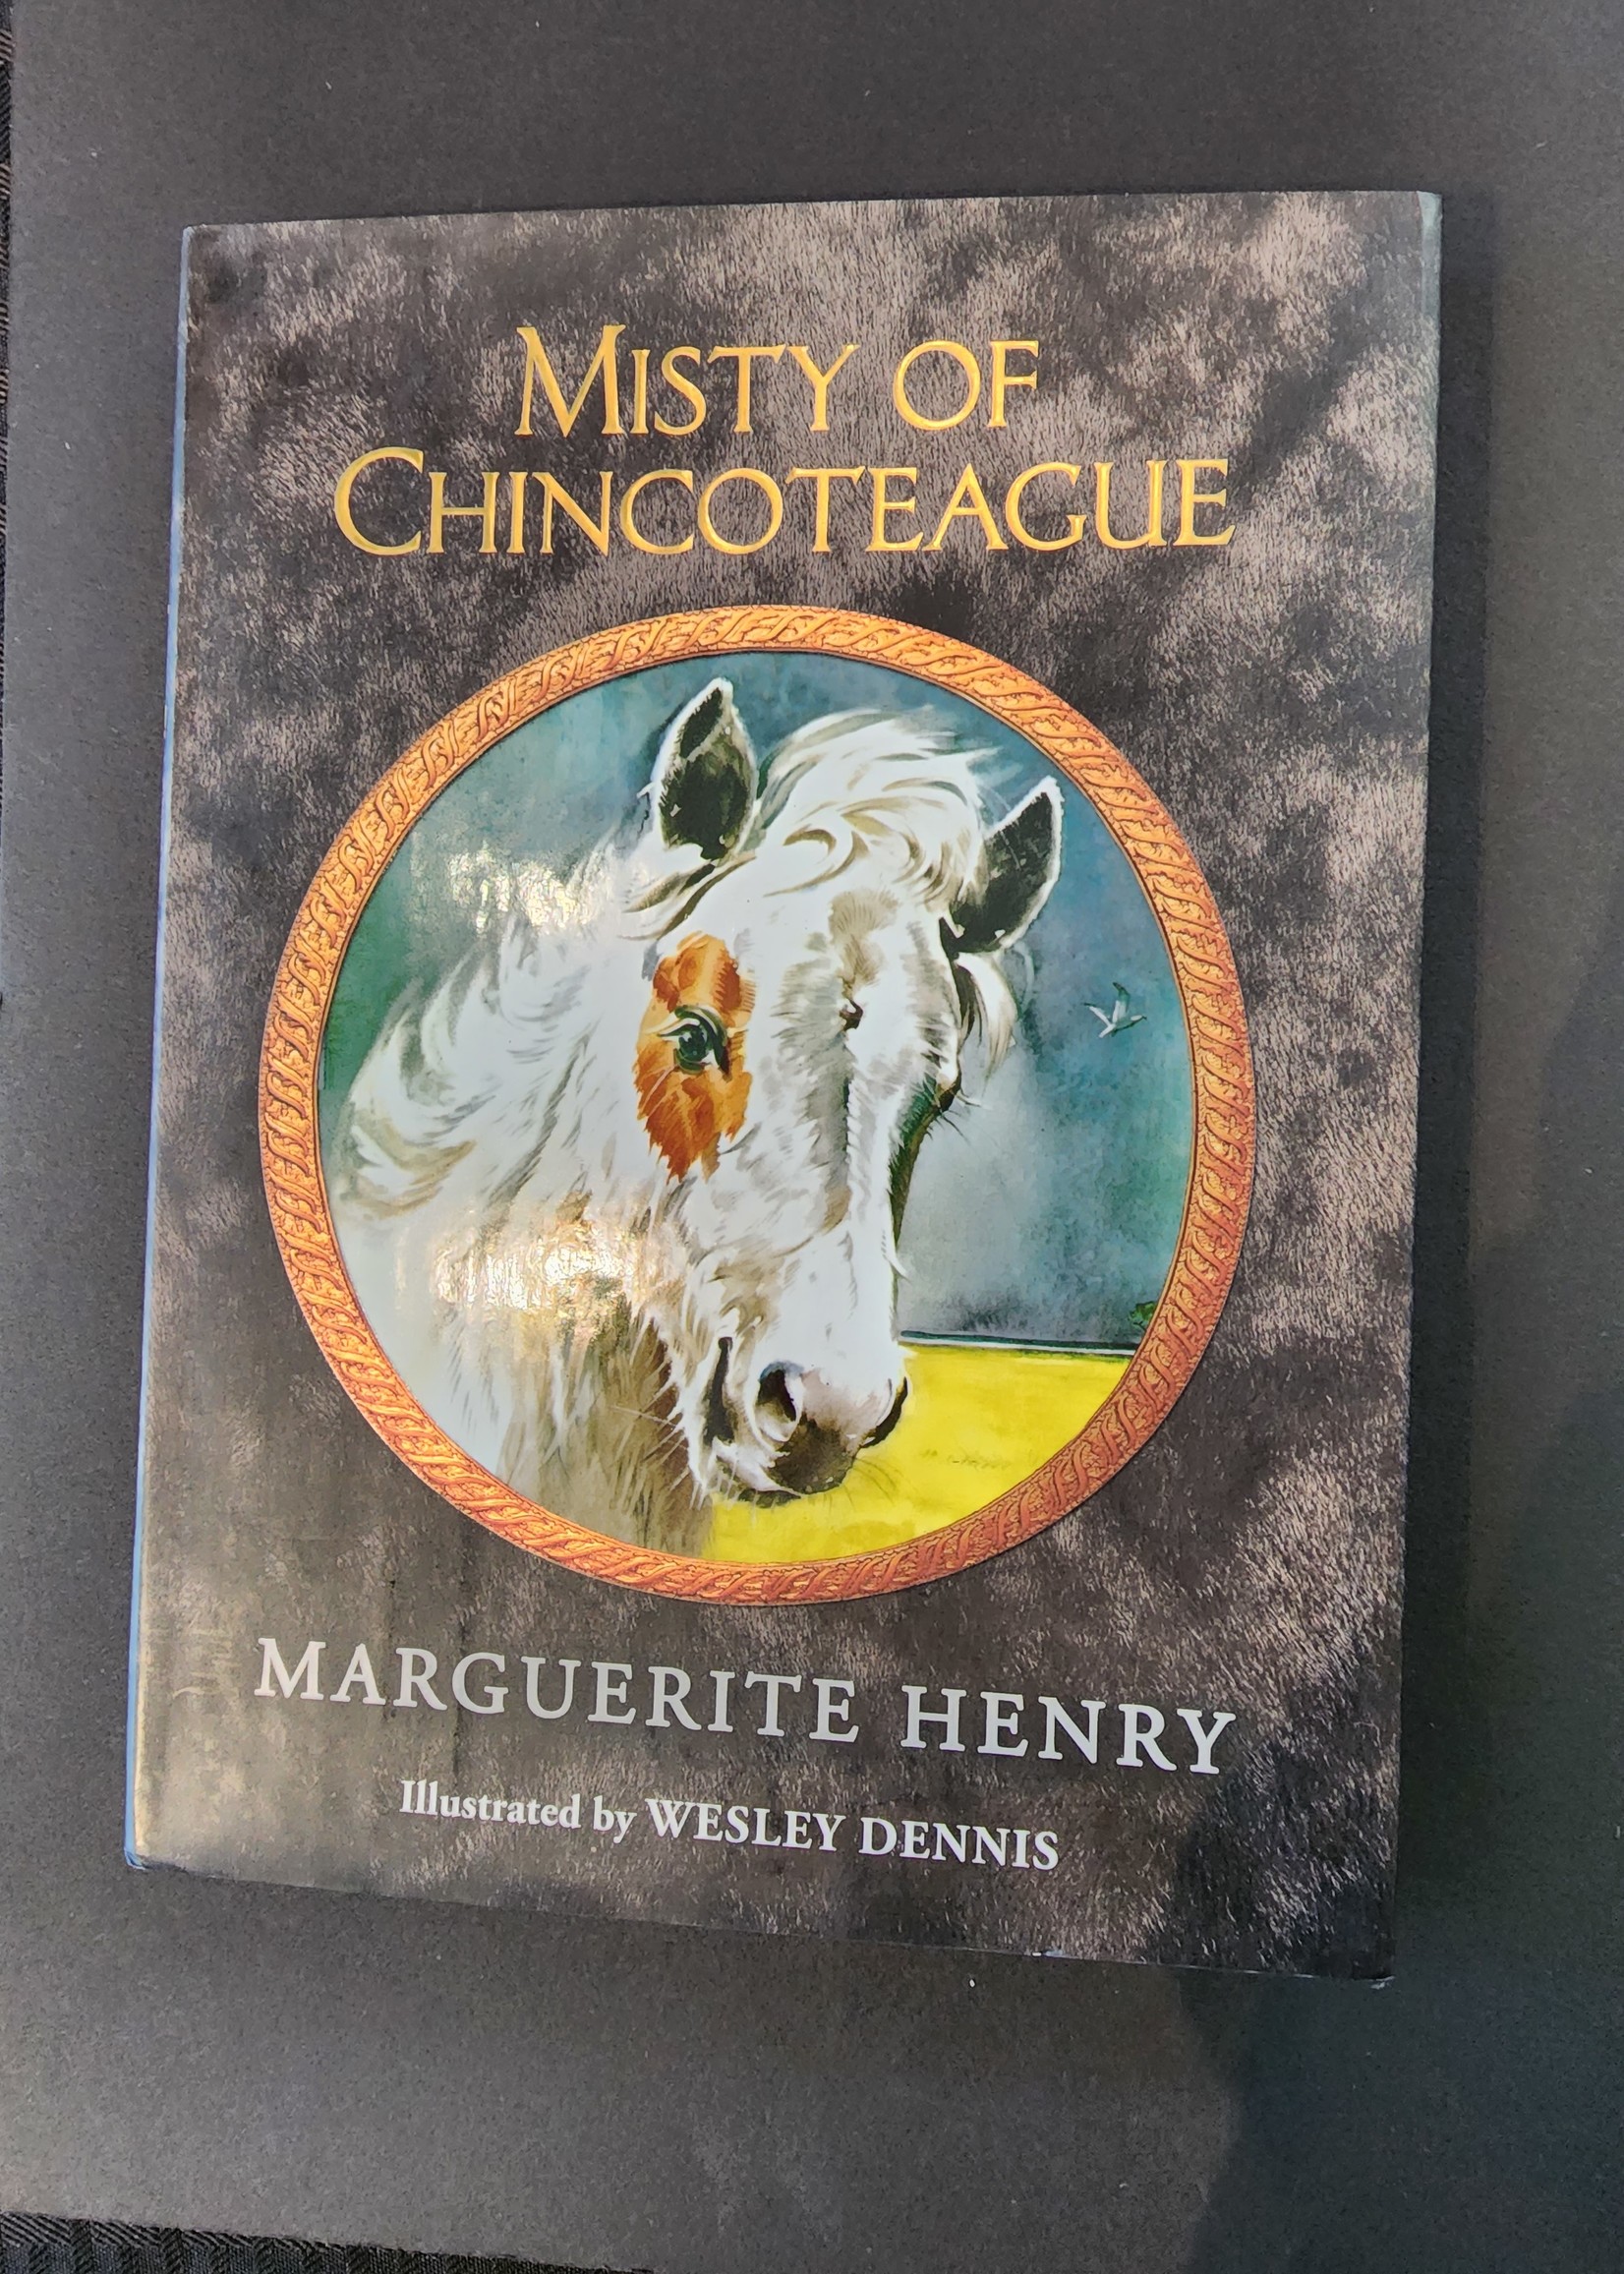 Marguerite Henry Misty Hardcover